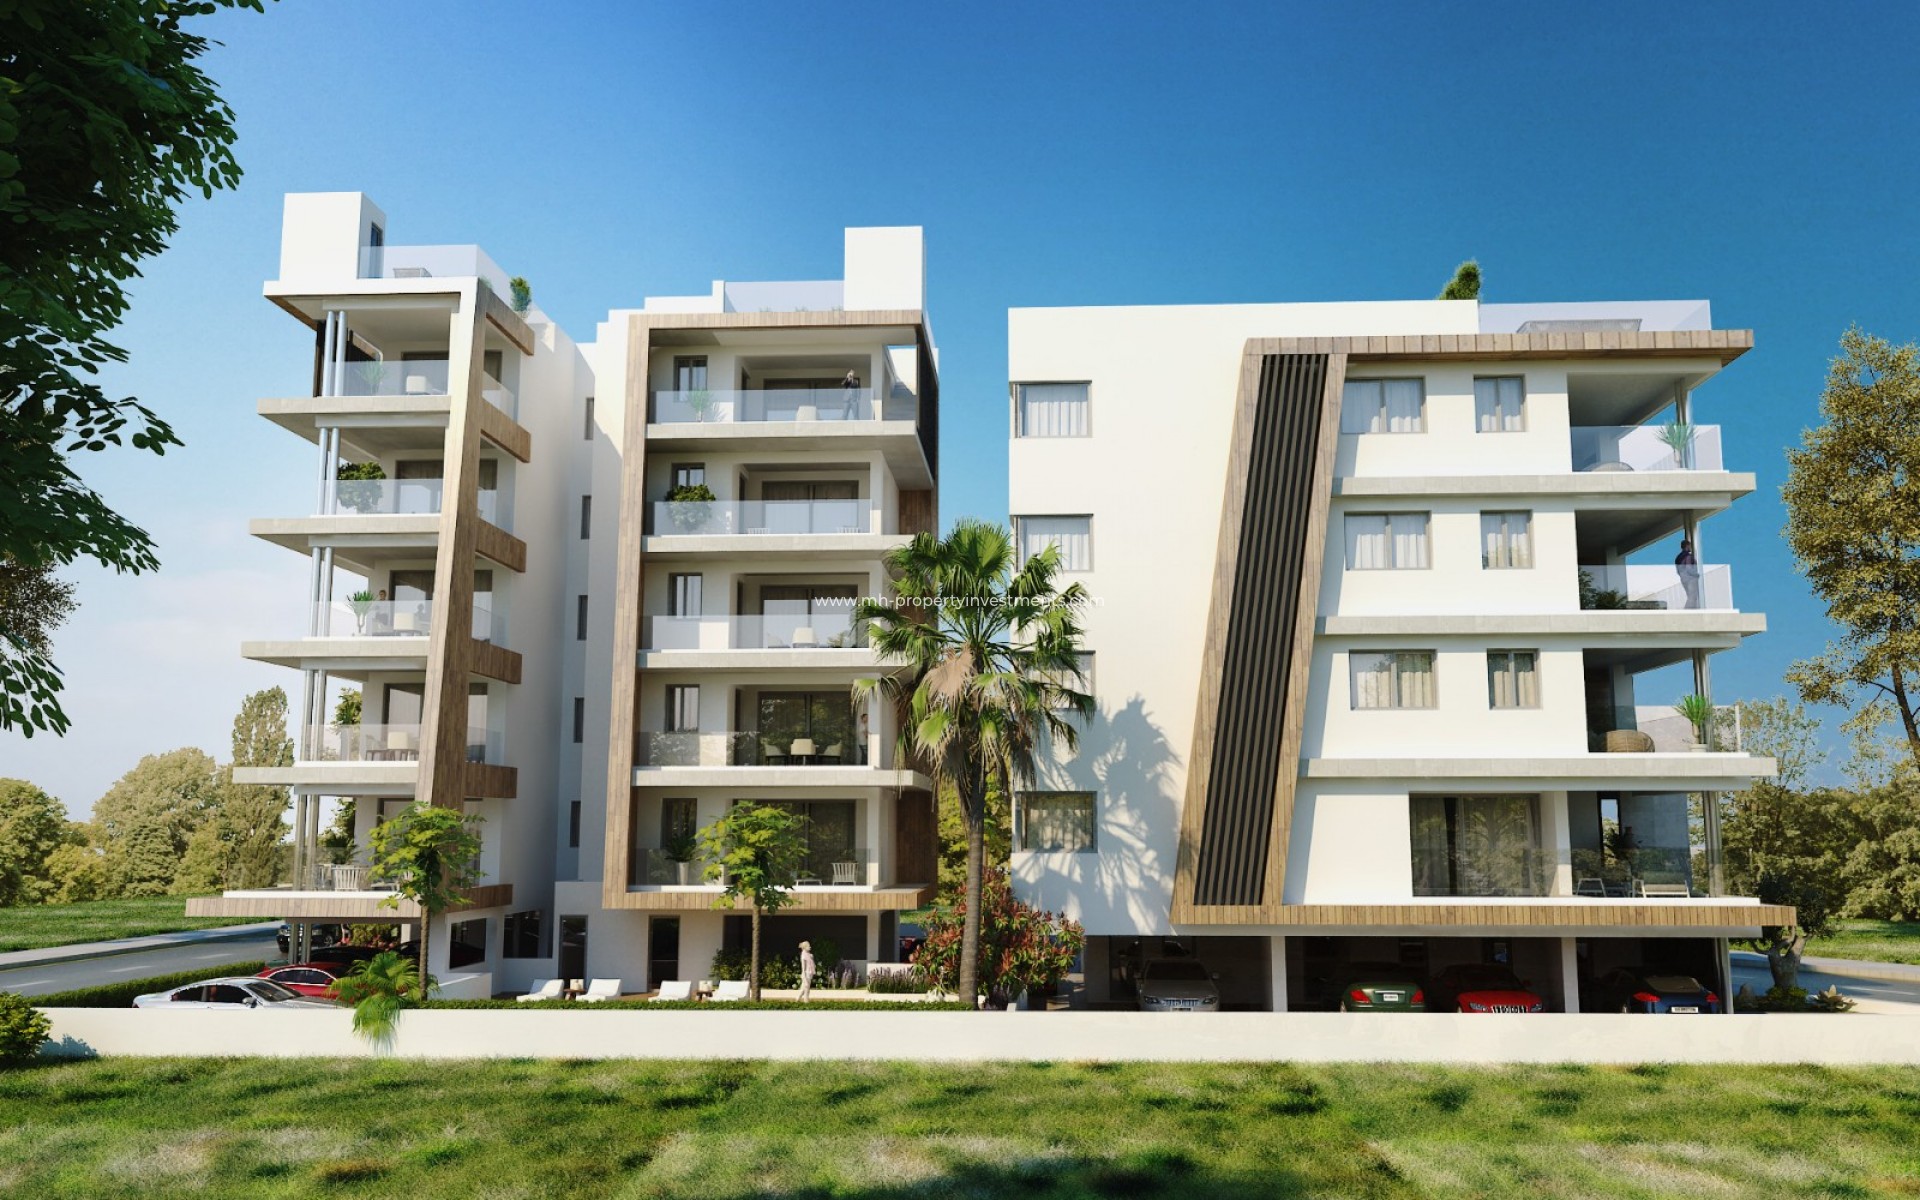 under construction - Apartment - Larnaca - Harbor